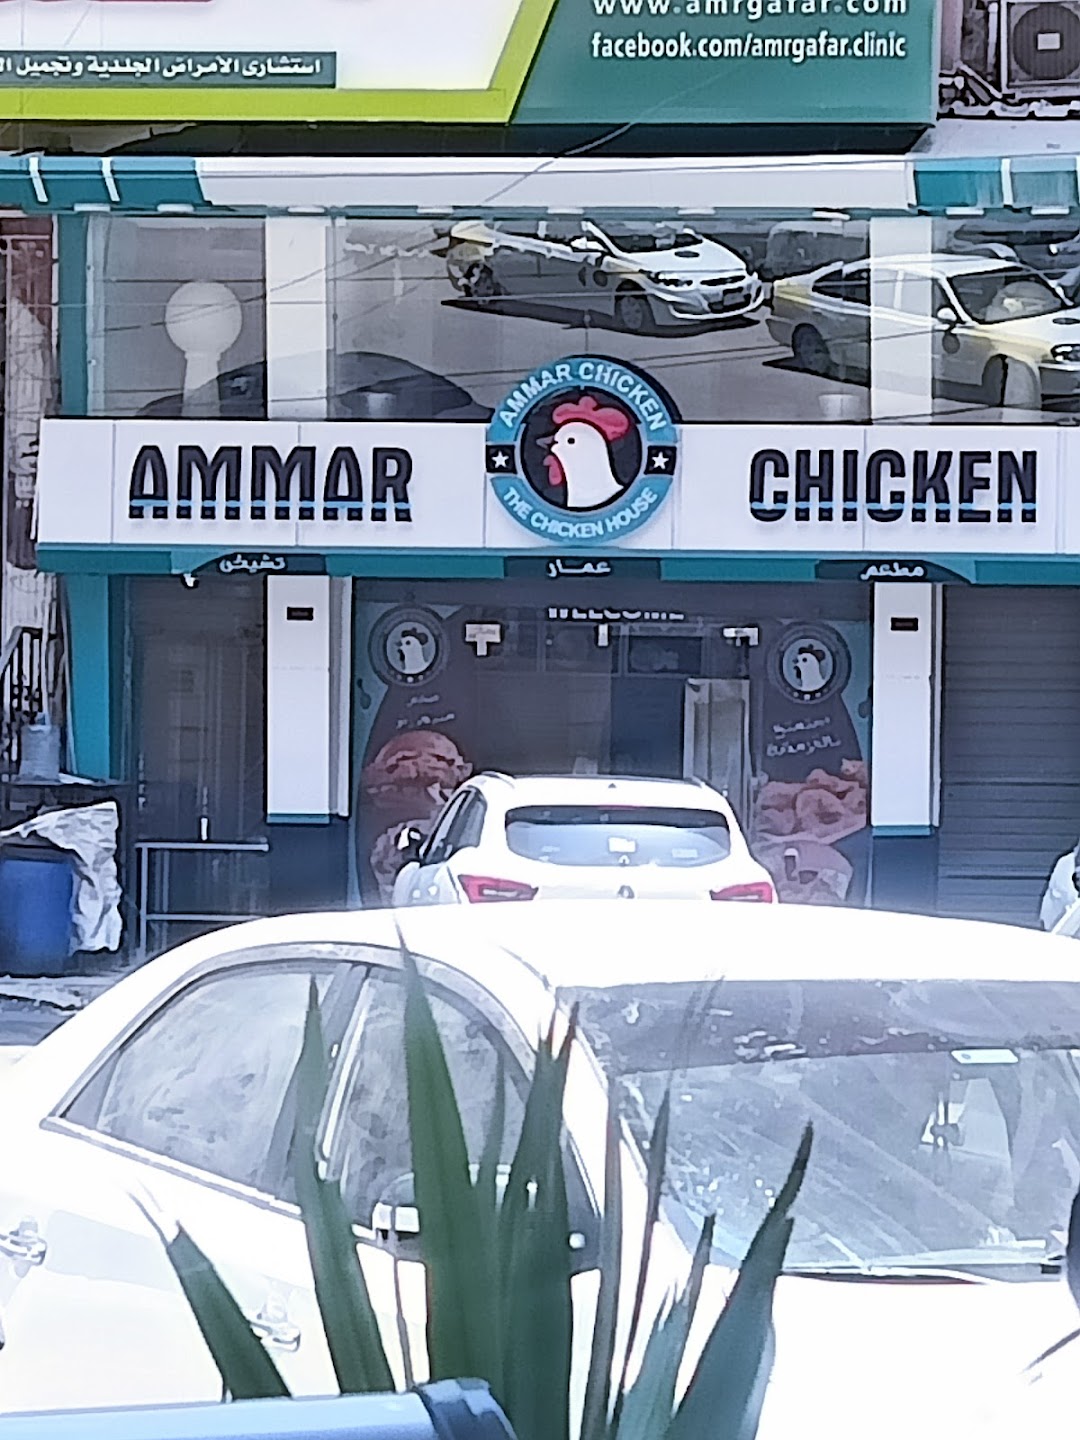 ammar chicken